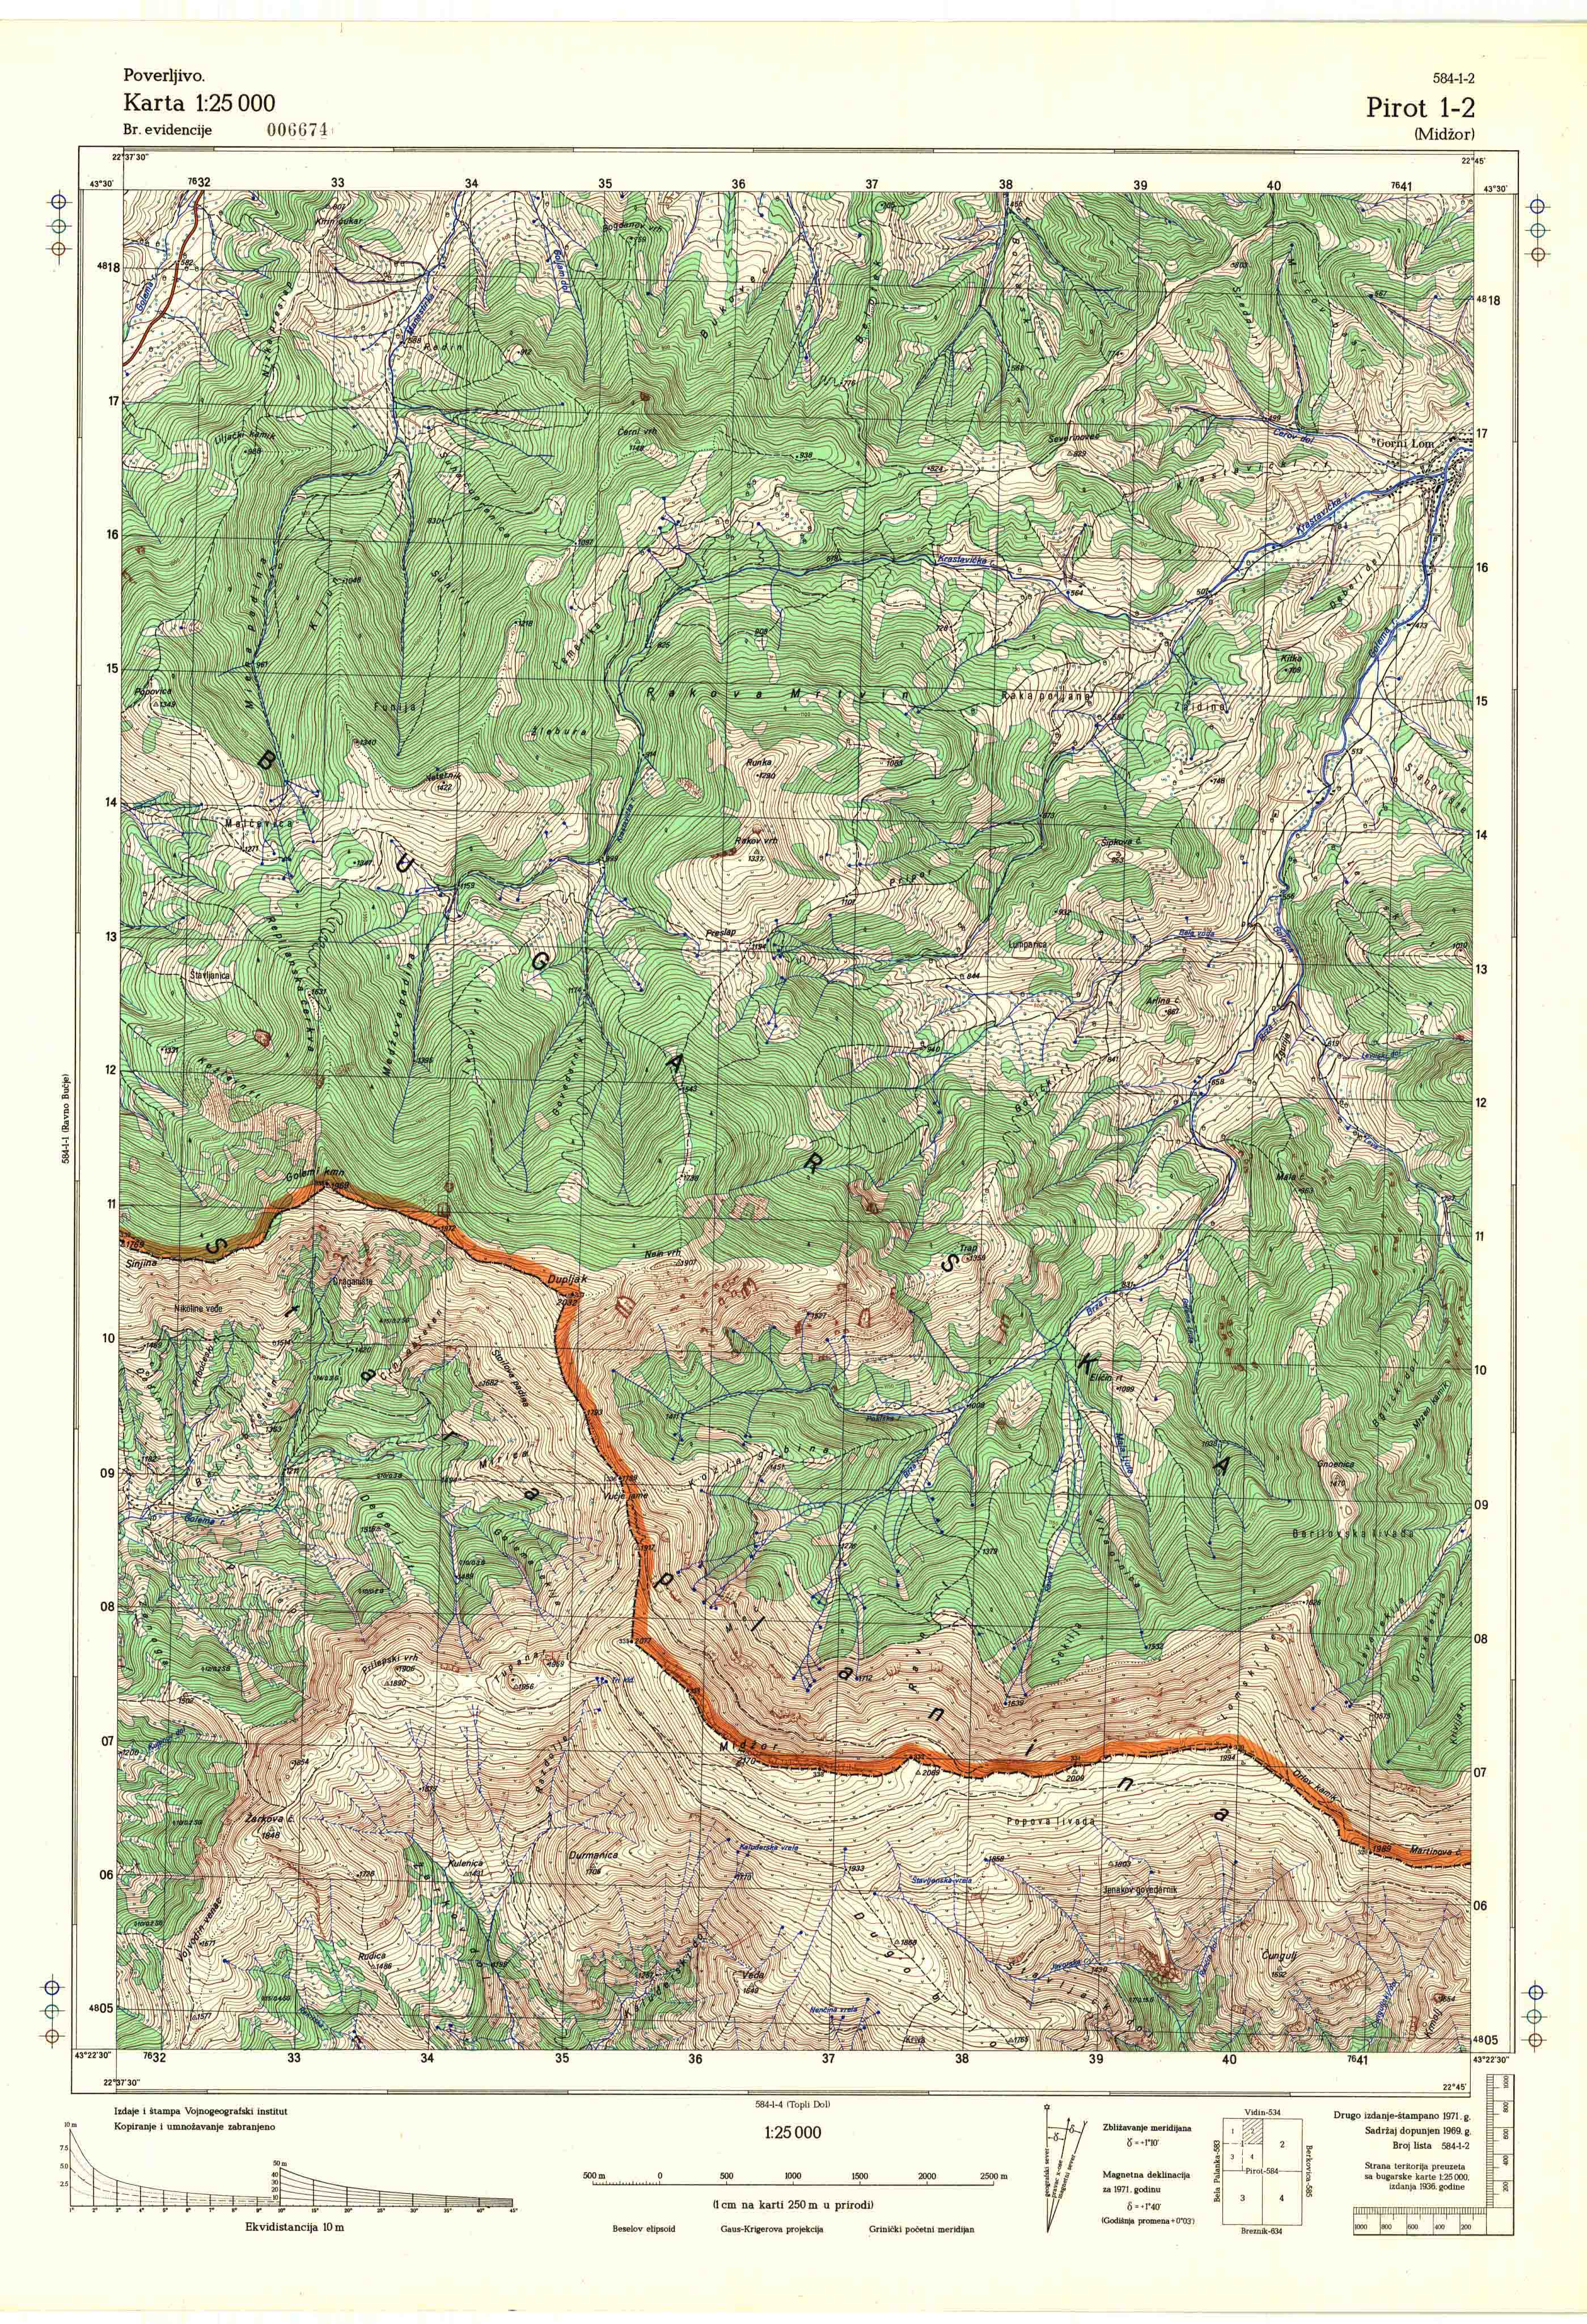  topografska karta srbije 25000 JNA  Pirot